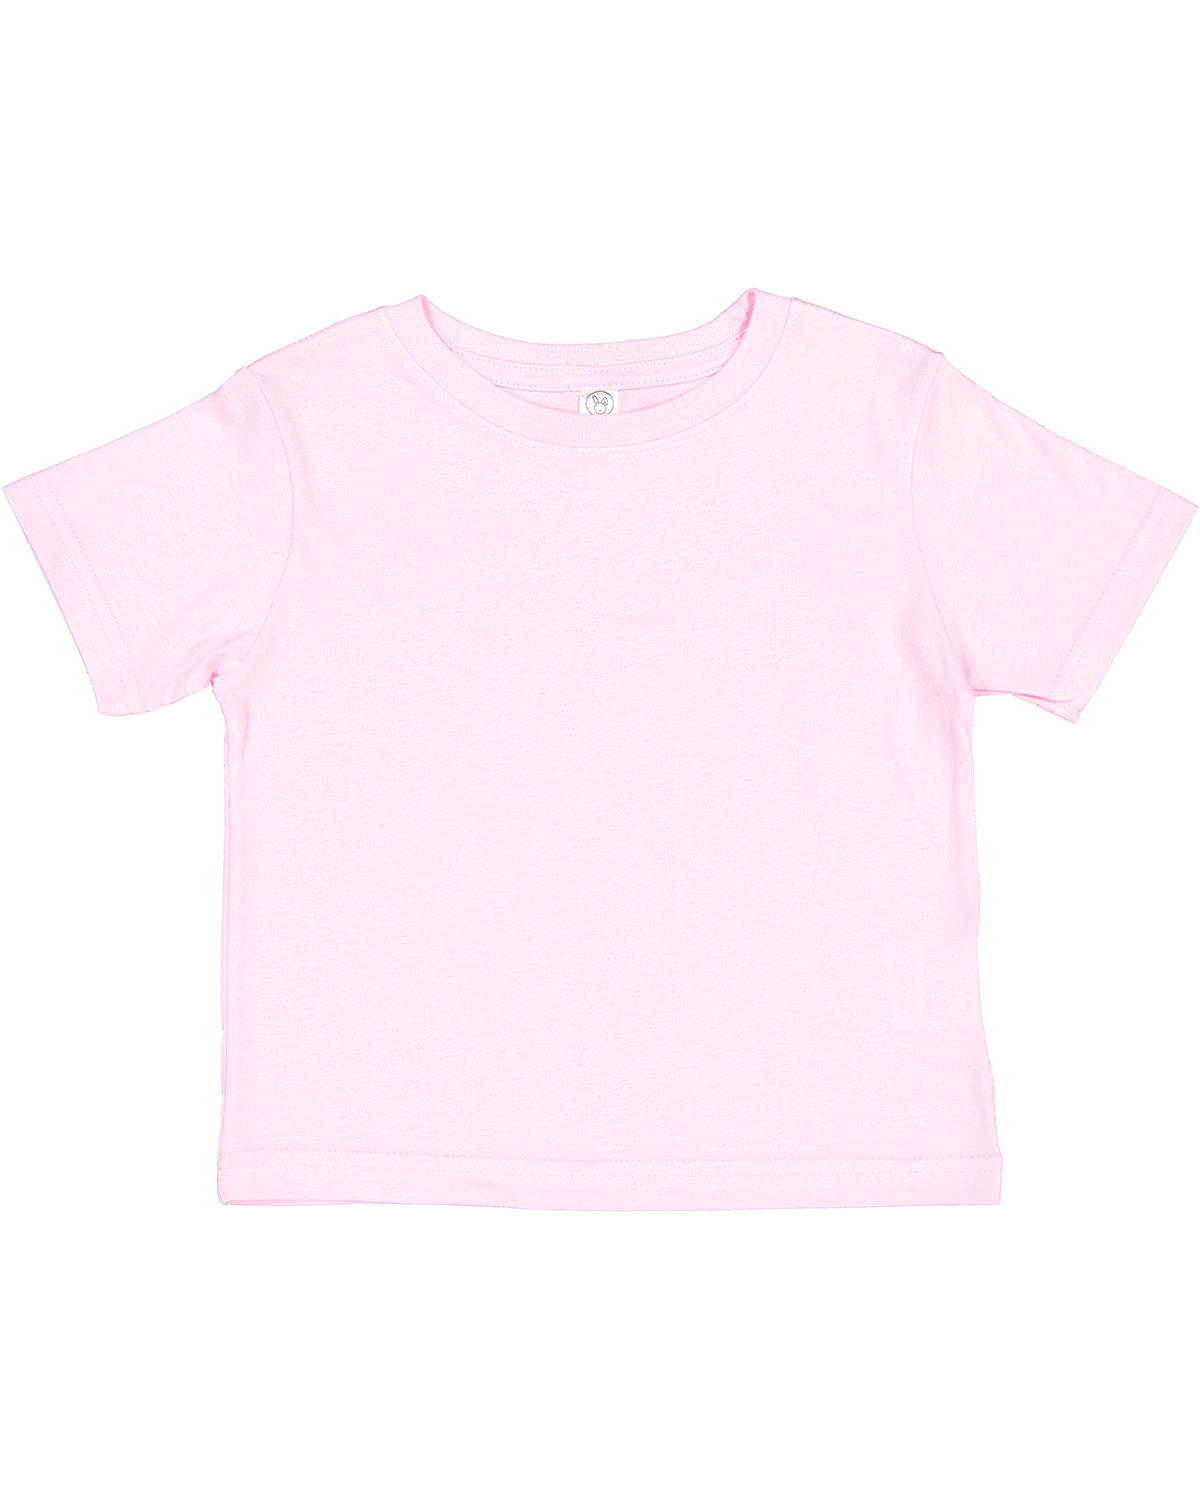 Rabbit Skins Toddler Cotton Jersey T-Shirt PINK 